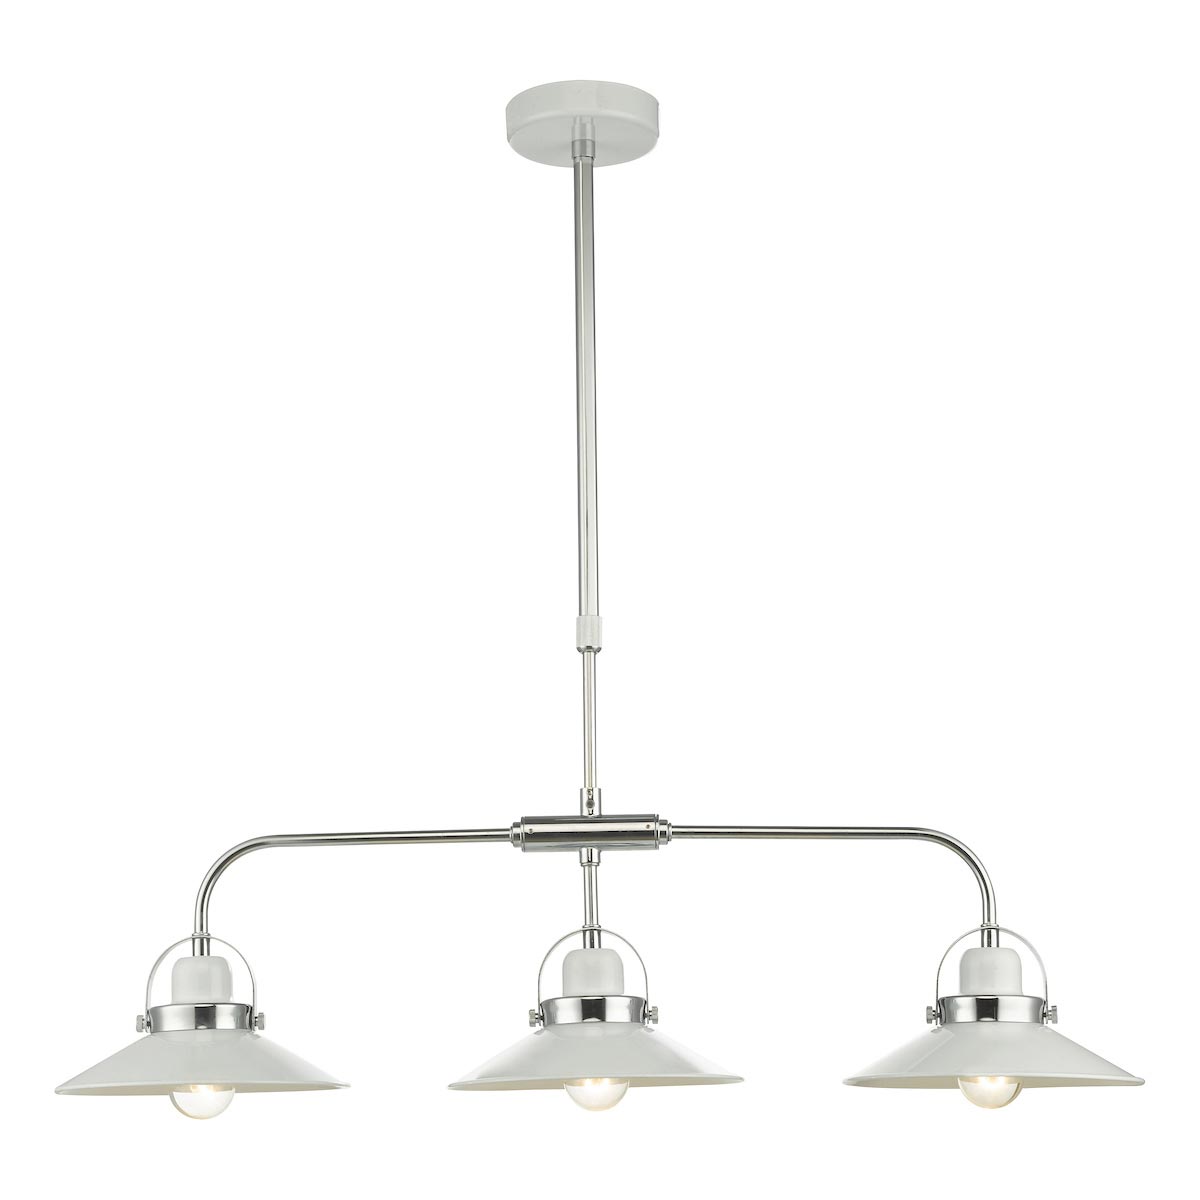 Dar Liden Retro Style 3 Lamp Pendant Ceiling Light Bar White & Chrome